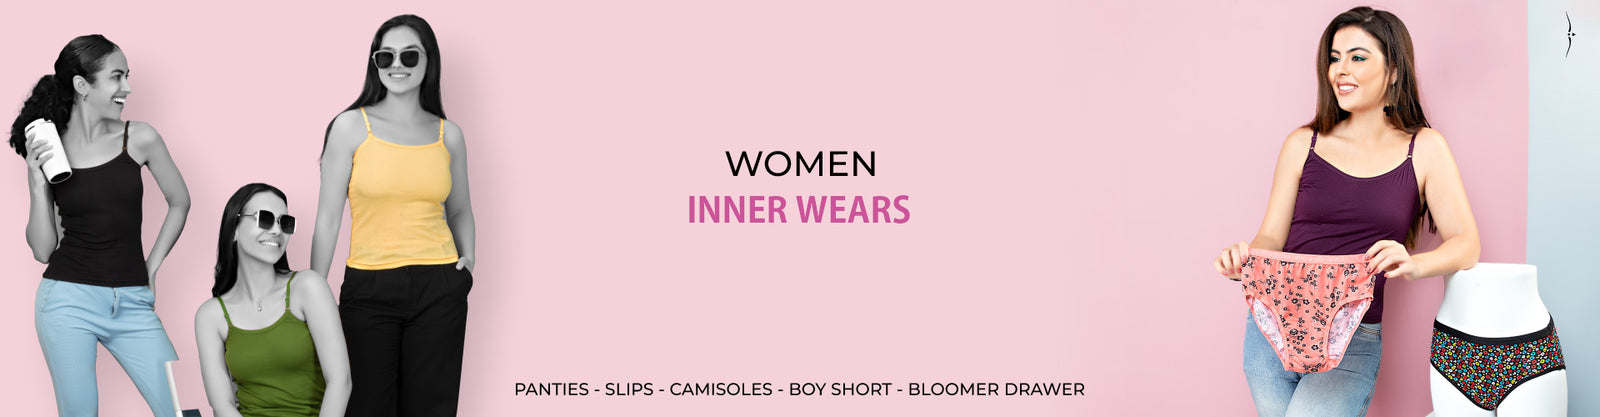 ESSA Softy Women's Briefs Outer Elastic Panties 4pcs [Multicolor]